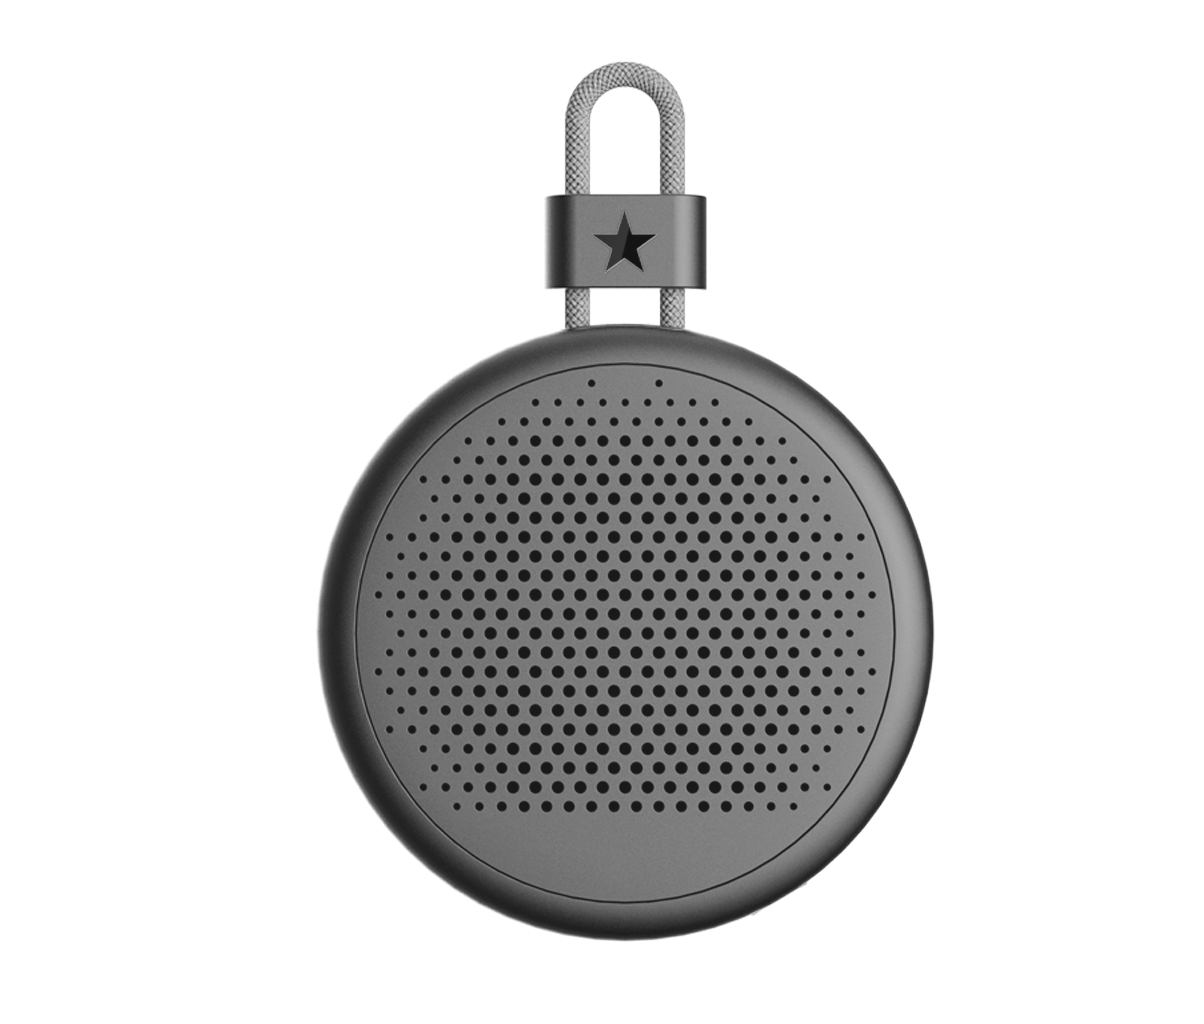 أحدث مكبرات صوت صغيرة تعمل بالبلوتوث مكبرات صوت مخصصة مصنع الصوت مكبرات صوت retrosound-F10